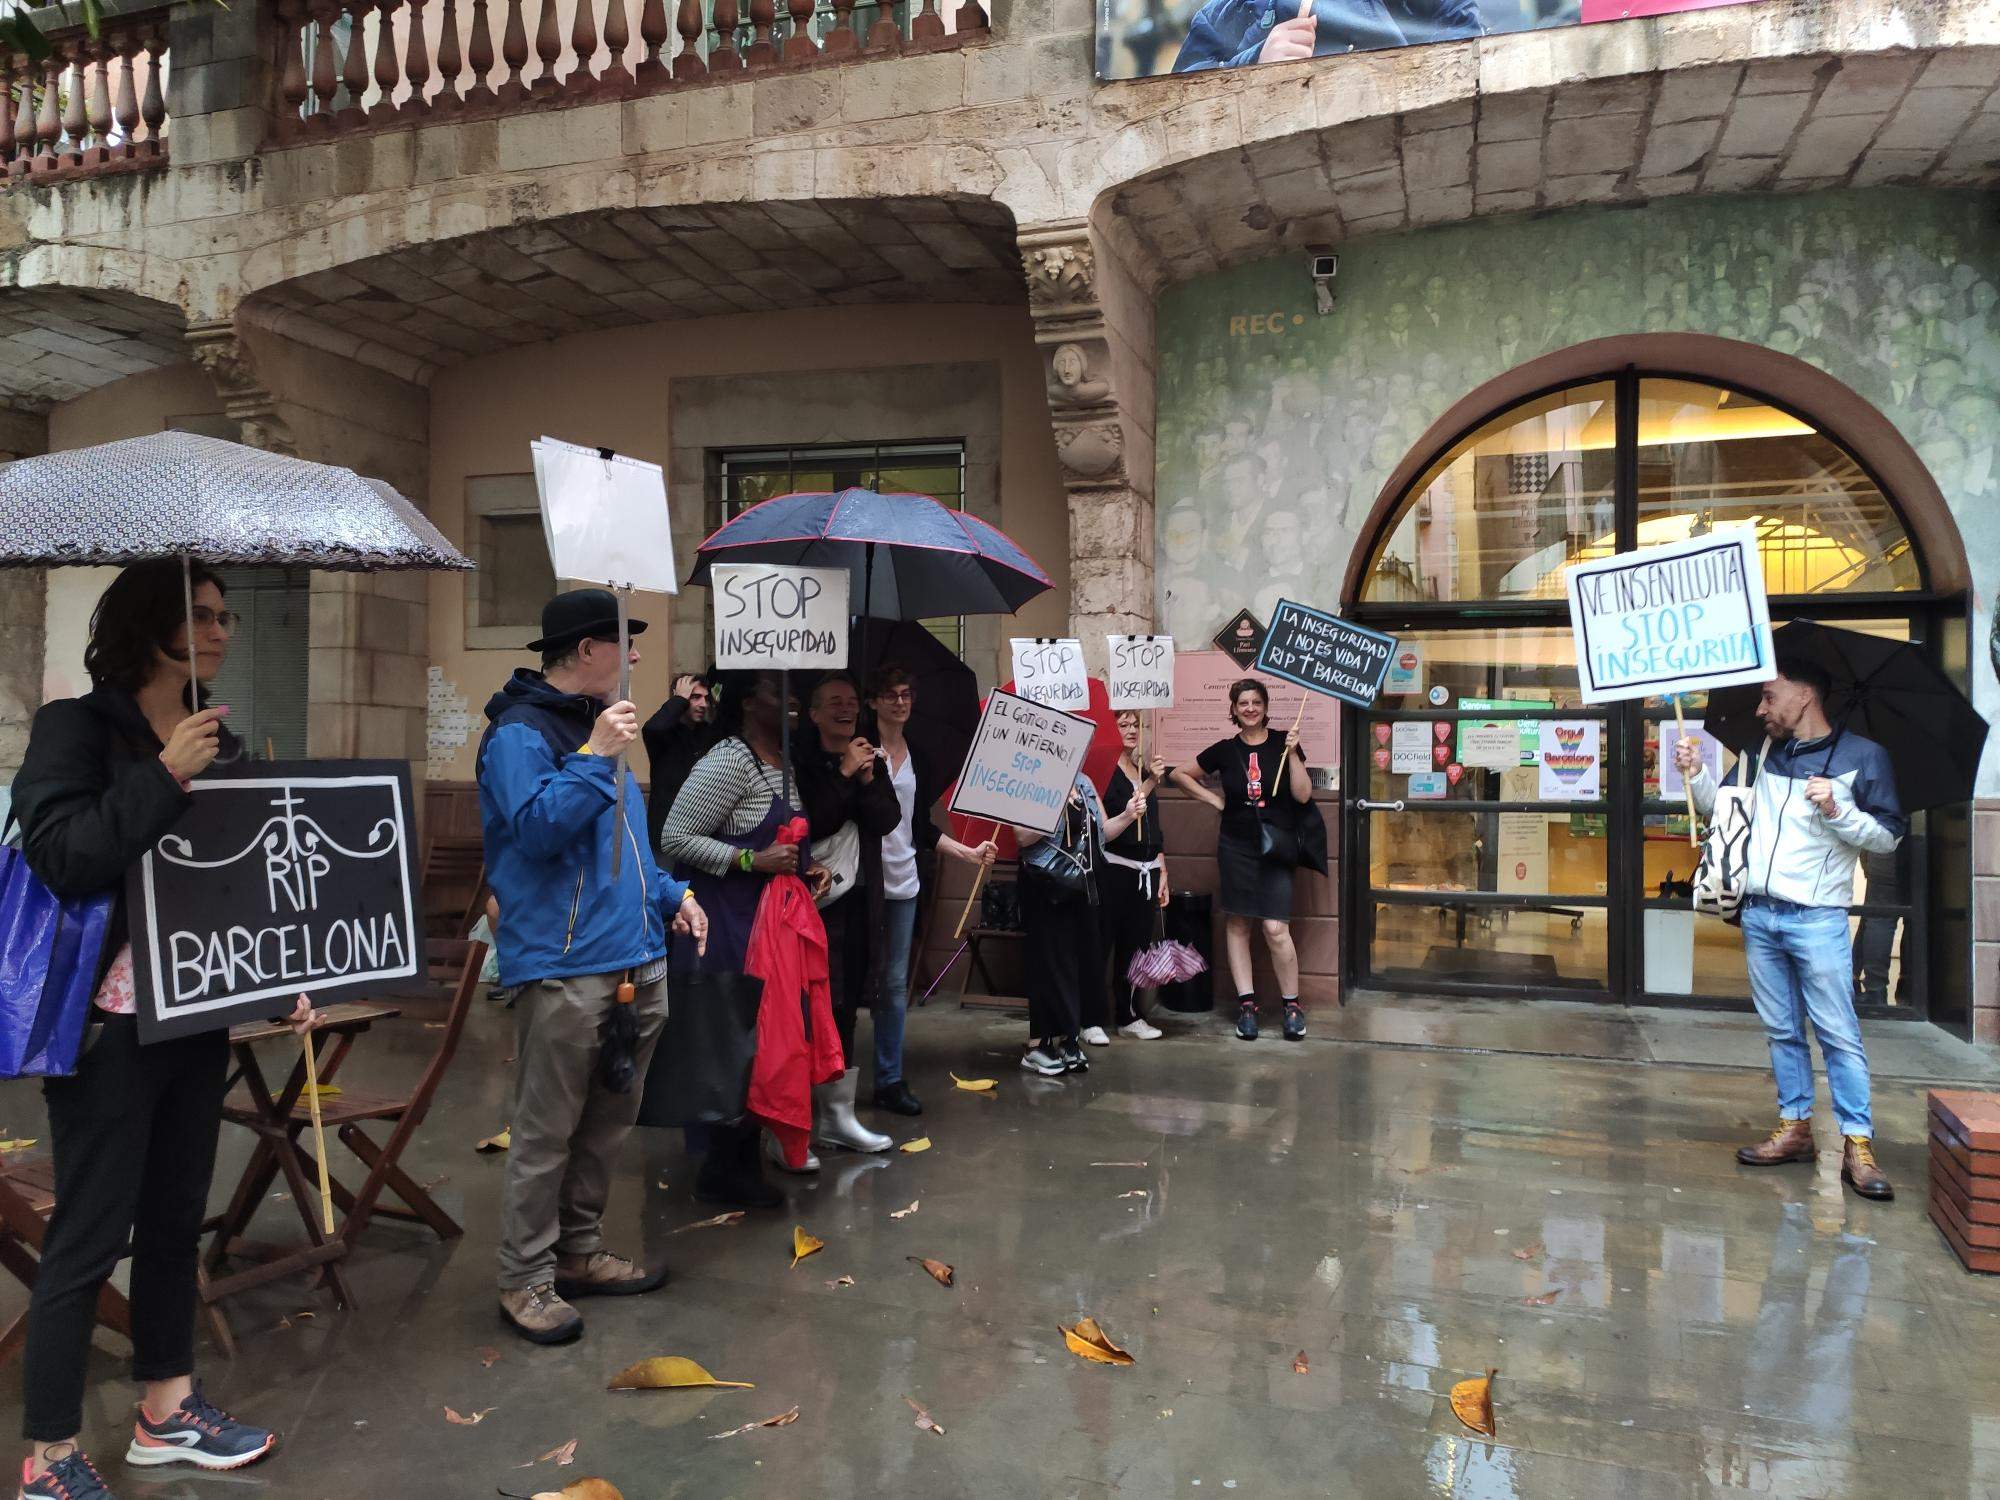 Vecinos del Gòtic protestan por la inseguridad en el barrio: "Es un infierno"